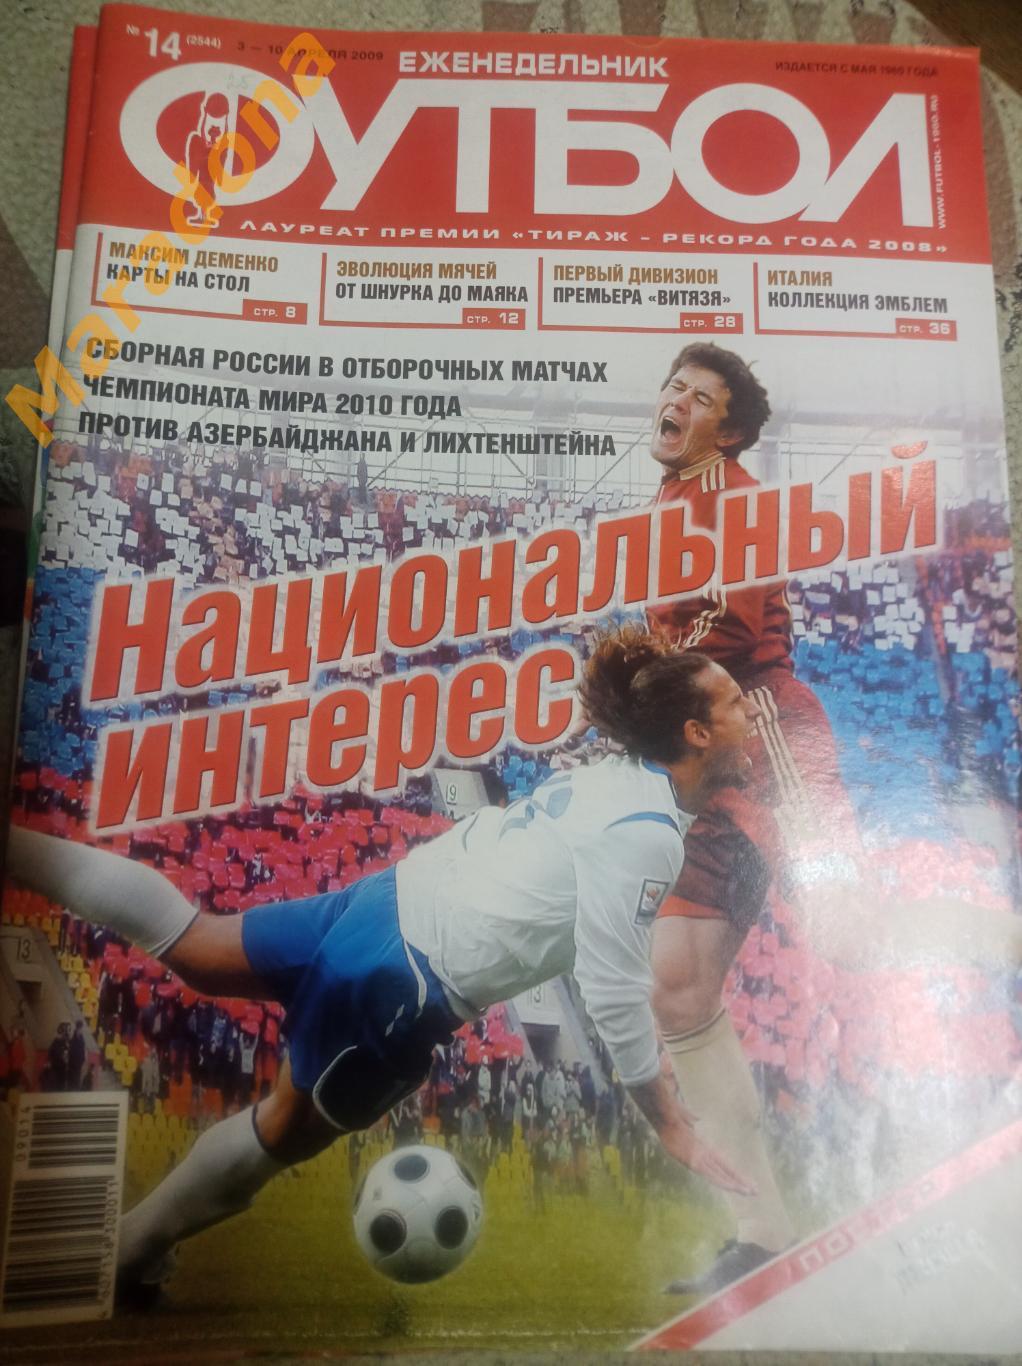 Еженедельник Футбол № 14 2009 постер Денисов Россия - Азербайджан + Лихтенштейн